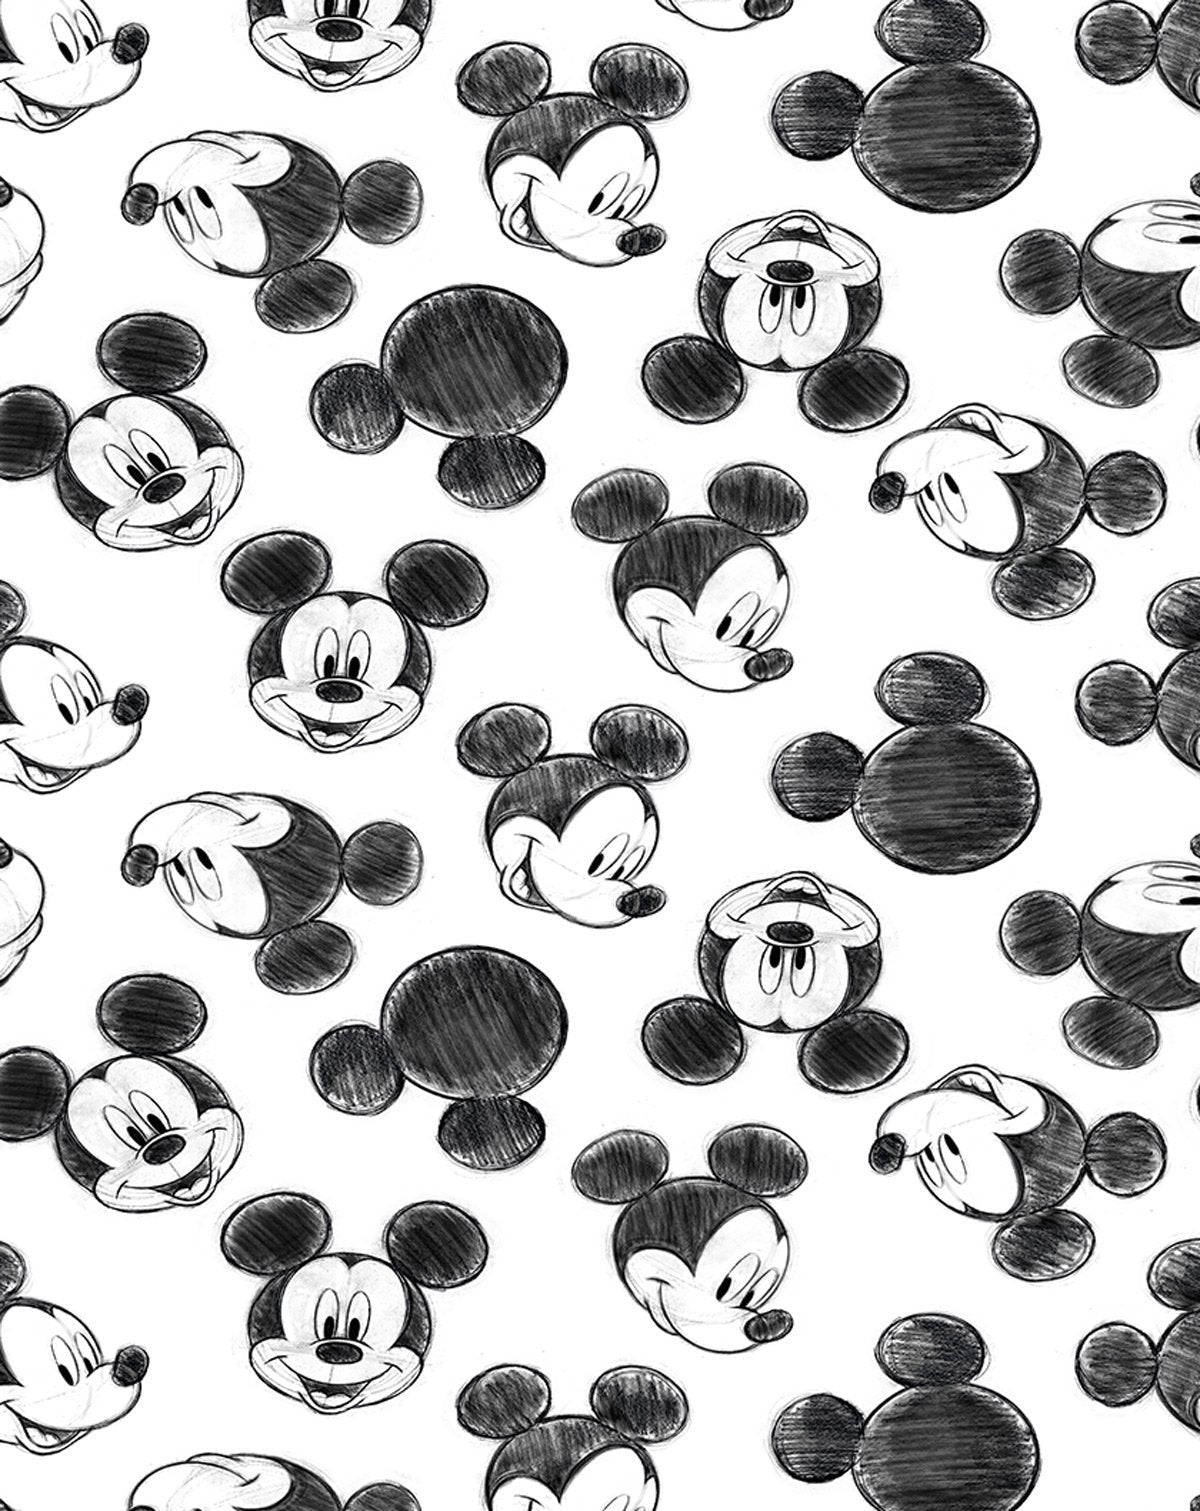 Einschönes Und Farbenfrohes Muster Im Disney-stil. Wallpaper